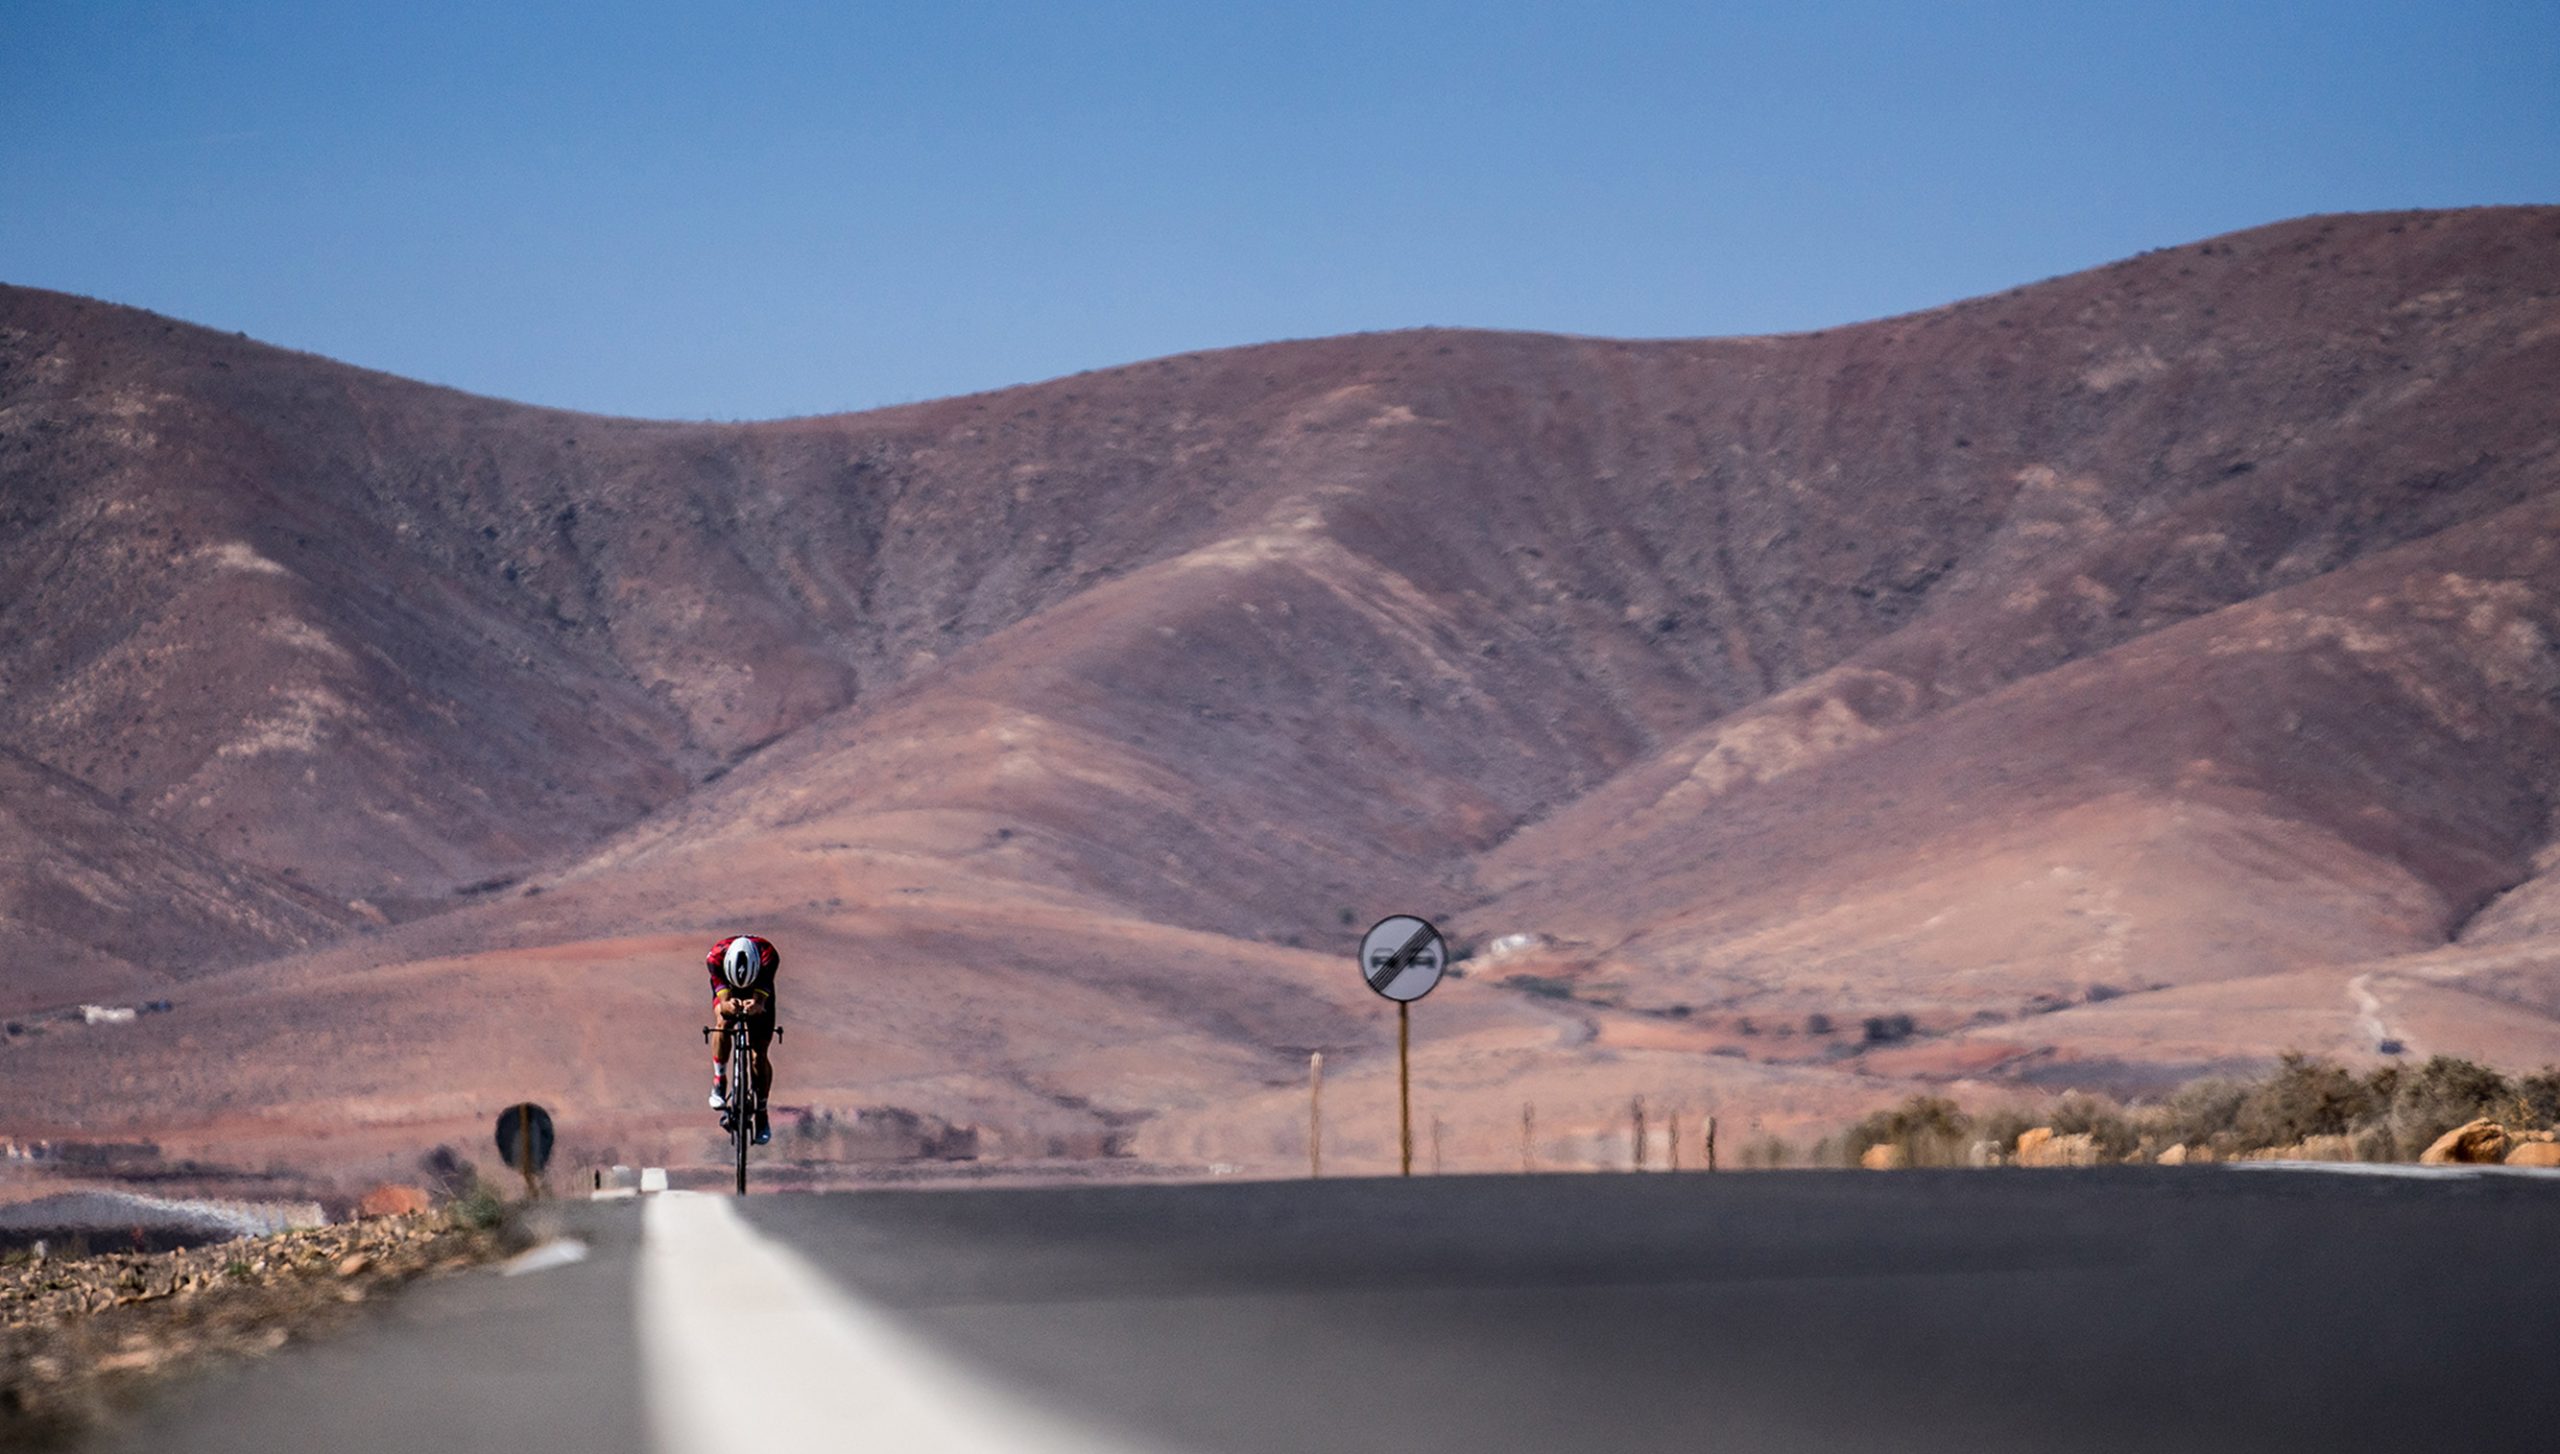 Foto a ras de suelo en una carretera solitaria con un ciclista entrenando de fondo y unas montañas tras él